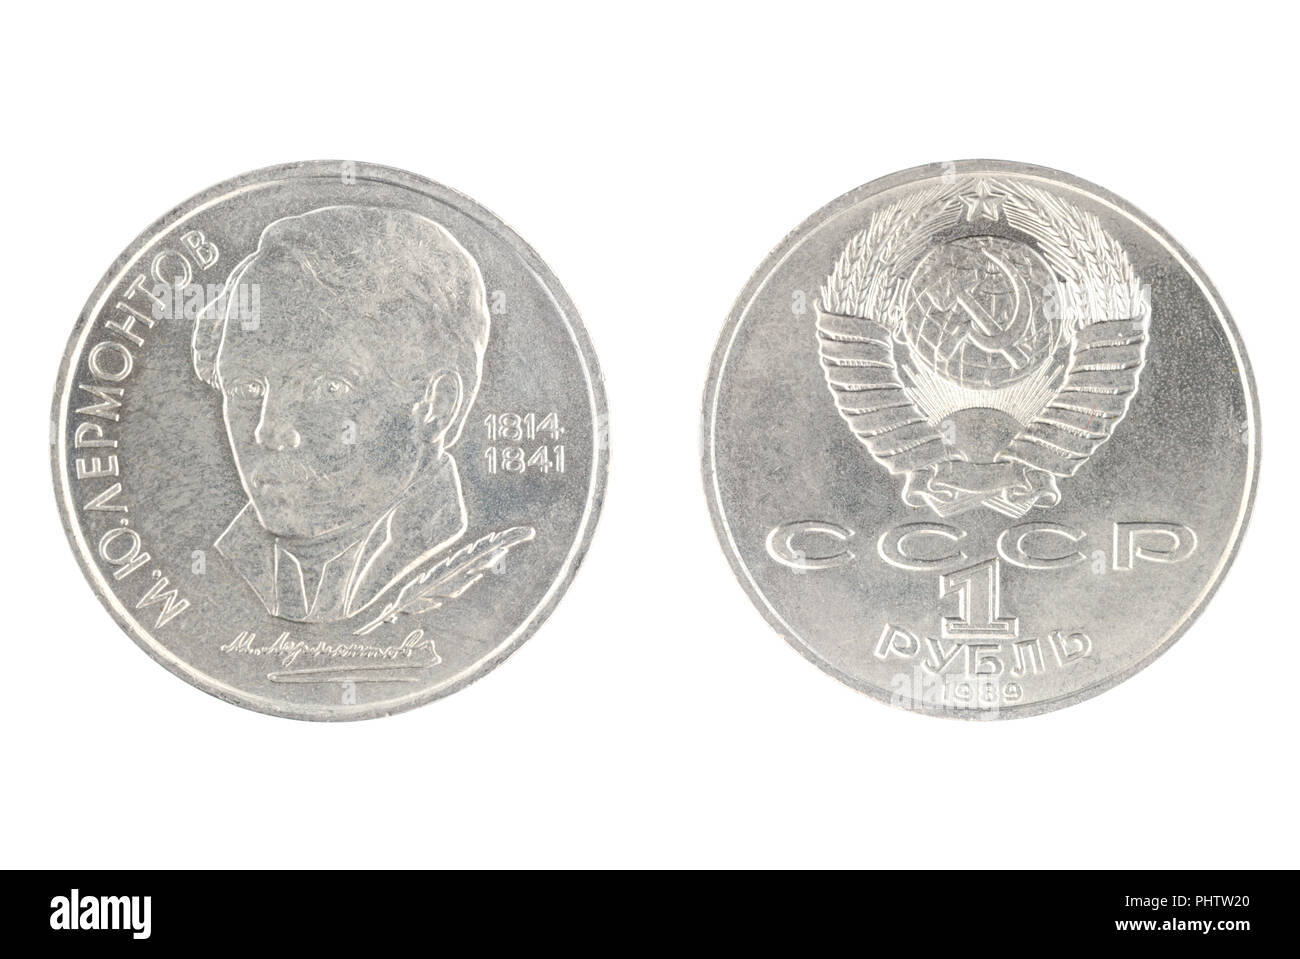 Satz von gedenkmünzen UDSSR Münze, den Nennwert von 1 Rubel. von 1989, zeigt Michail Lermontow, russische Dichter, Romancier, Dramatiker, Maler. Isol Stockfoto